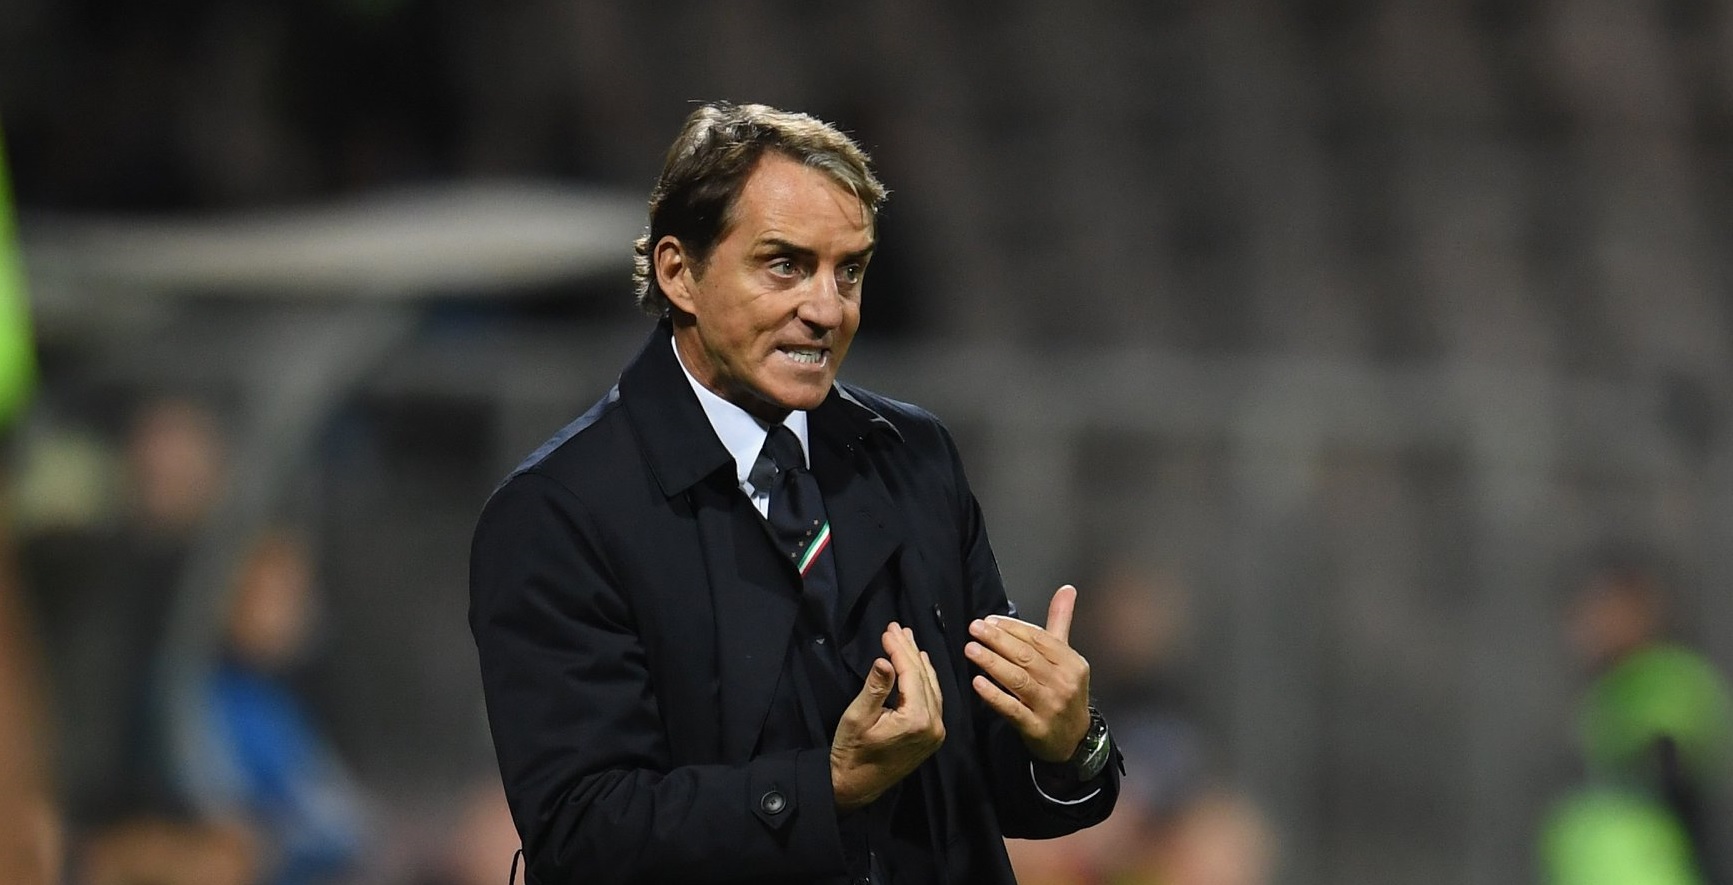 Il CT dell’Italia, Roberto Mancini, a FreeSport: “Il Benevento ha diversi giocatori interessanti, li seguiamo. Felici di aver riavvicinato gli italiani alla Nazionale”